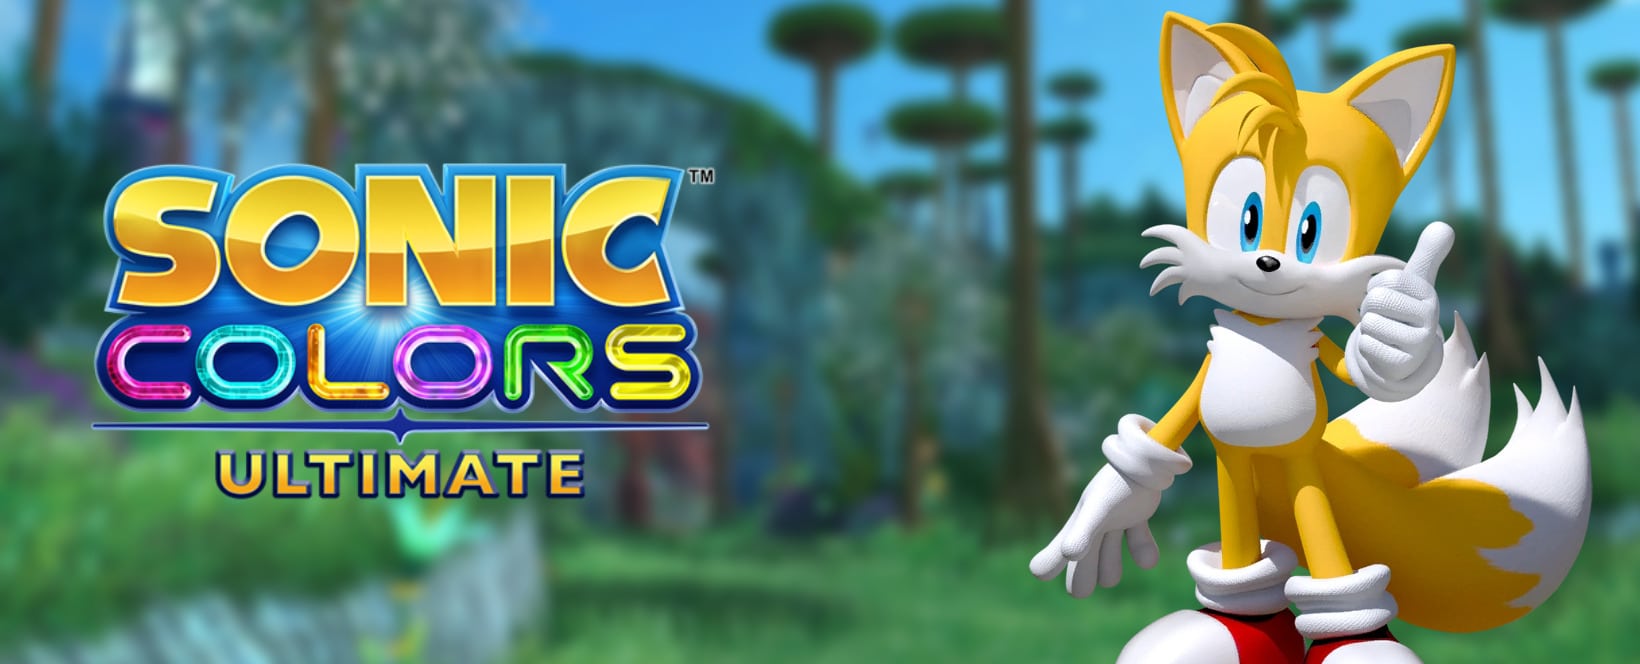 Sonic Colors Ultimate en Switch recibe críticas por errores de lanzamiento y fallas - GamersRD